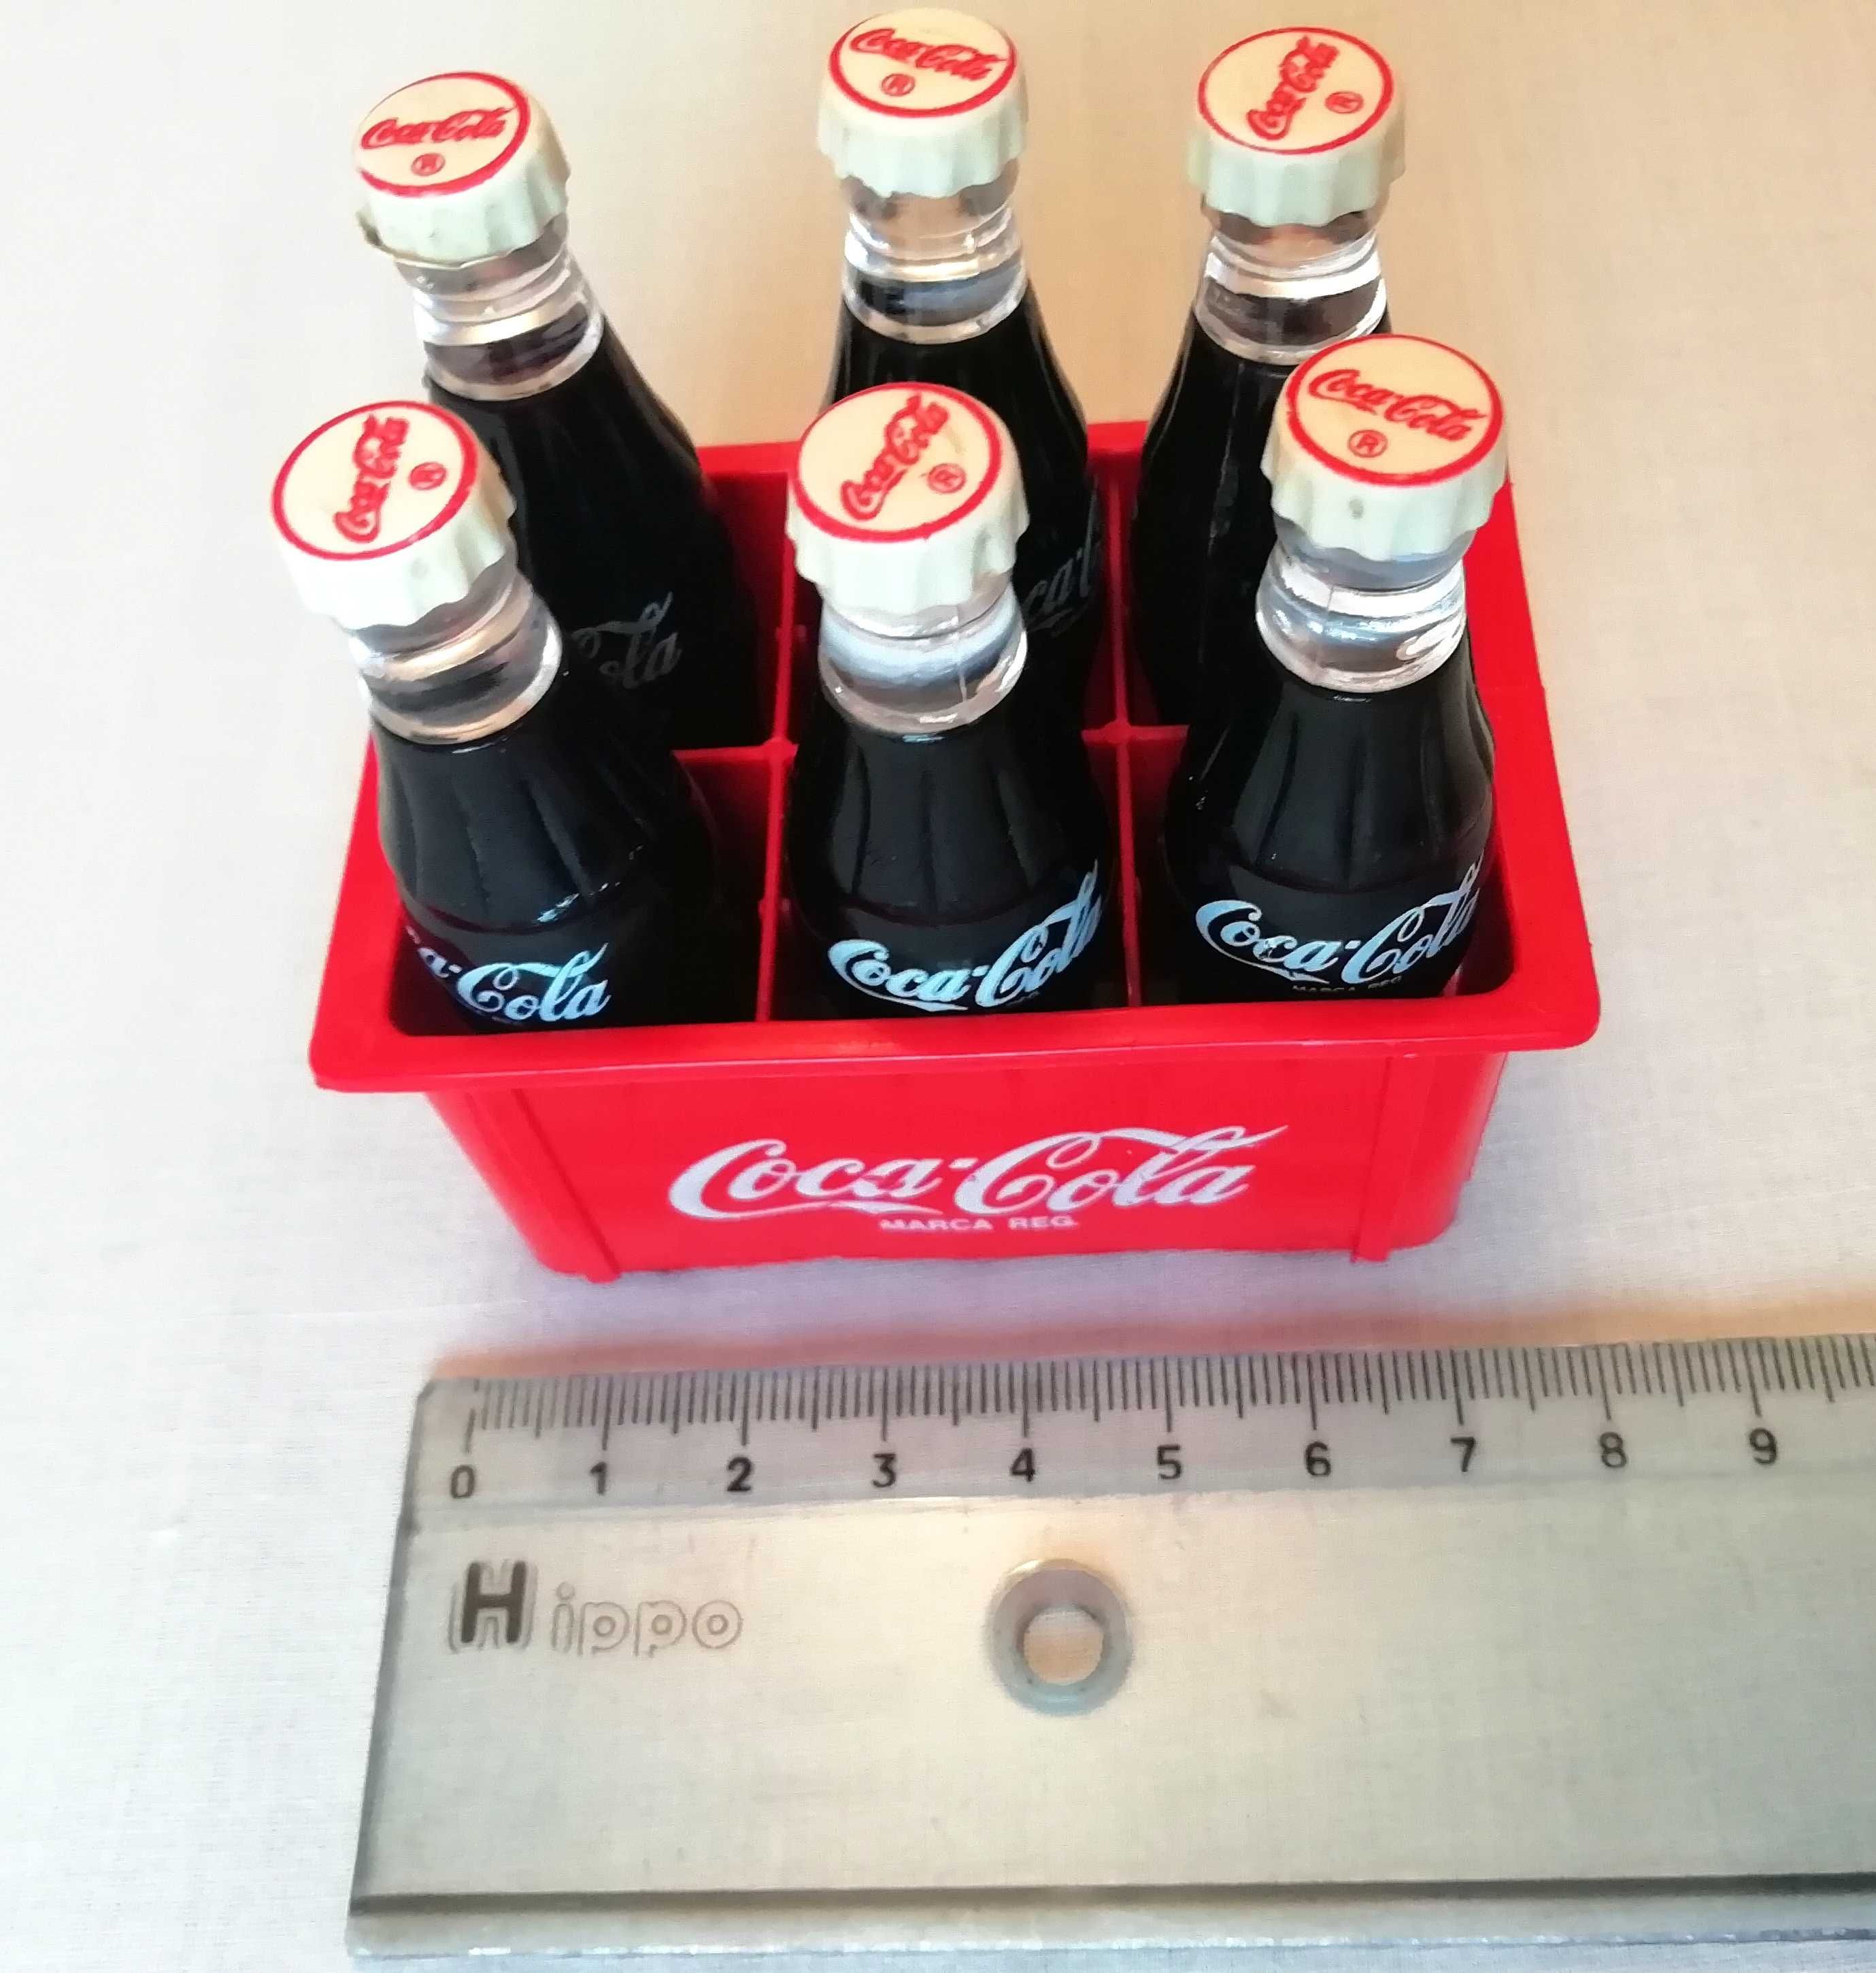 Carro louça Licínio- Portugal / Miniatura grade Coca-Cola com garrafas